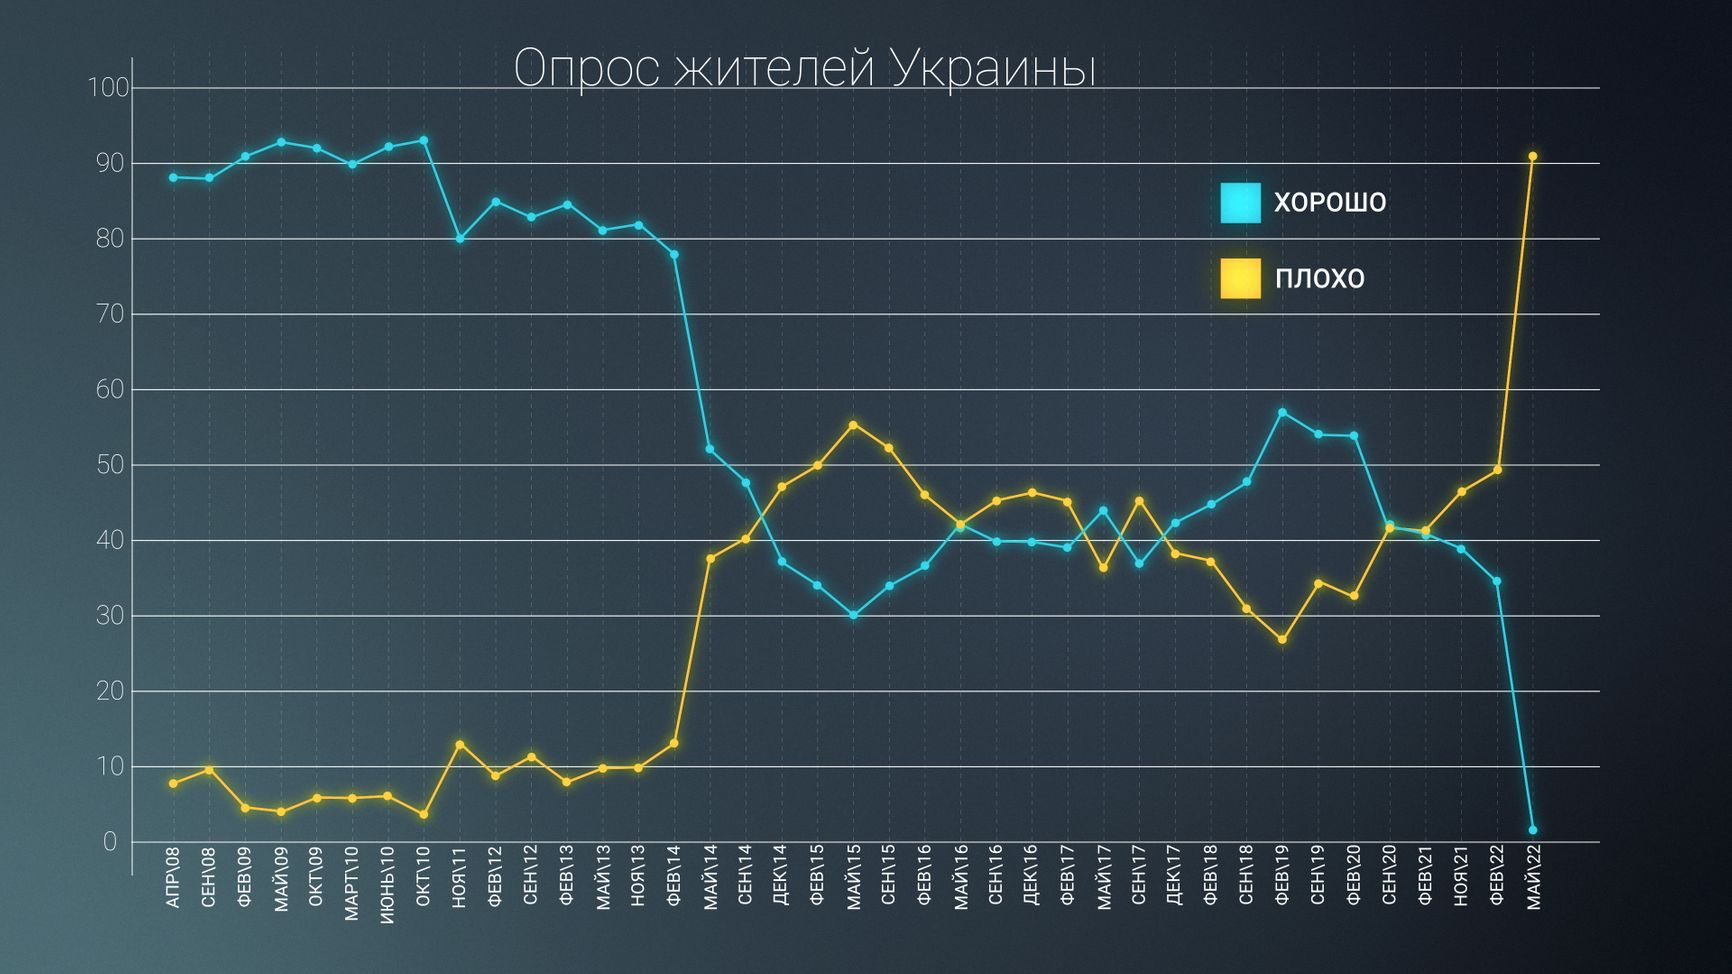  Динамика хорошего и плохого отношения населения Украины к России